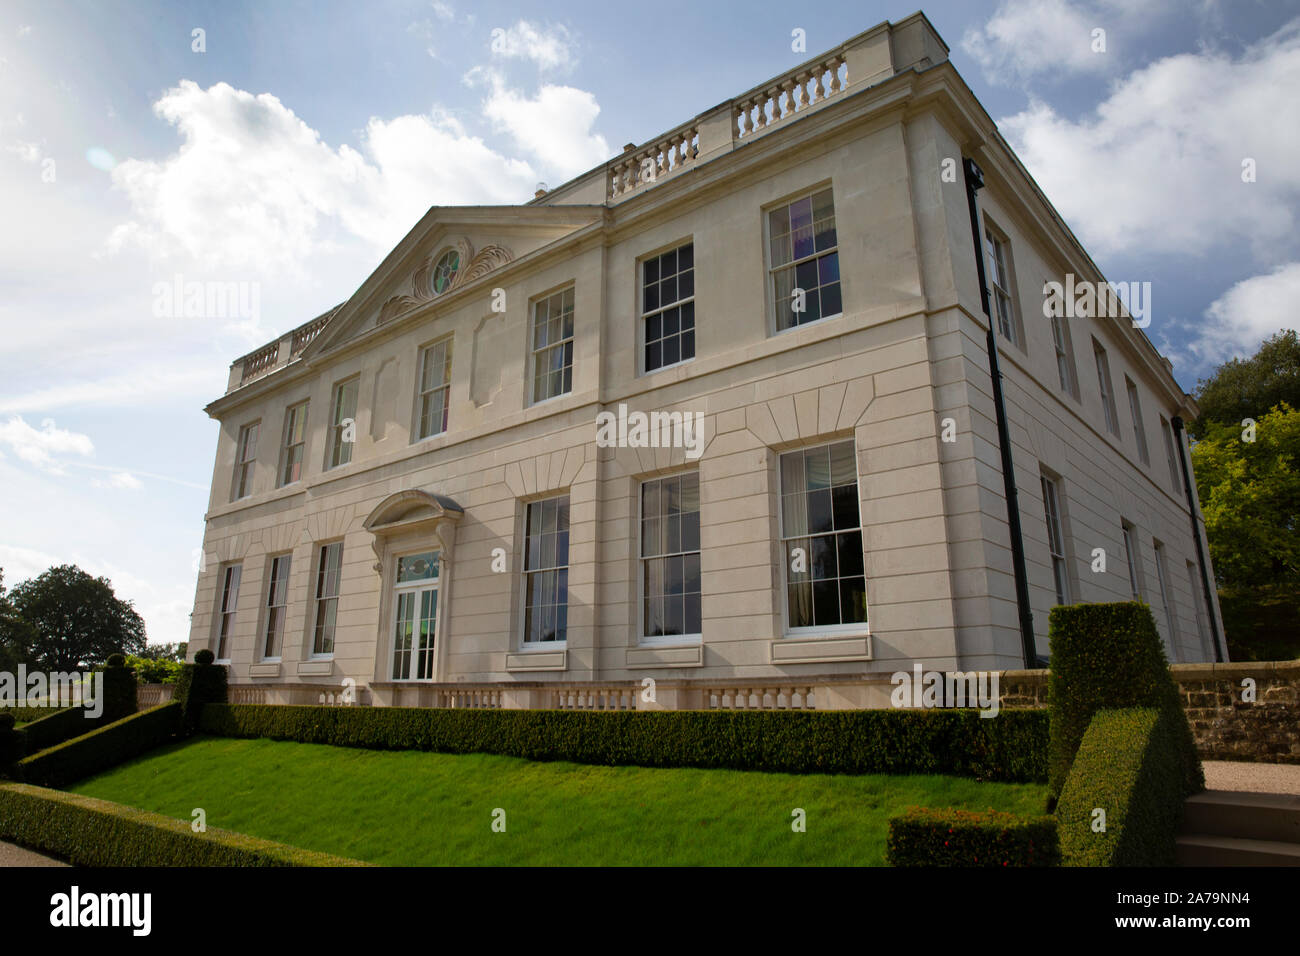 Pitshill Haus, Haus aus dem 18. Jahrhundert von den Damen und Herren Karl Pearson und seine Frau Lila, Tillington, Petworth, West Sussex, Großbritannien Besitz Stockfoto